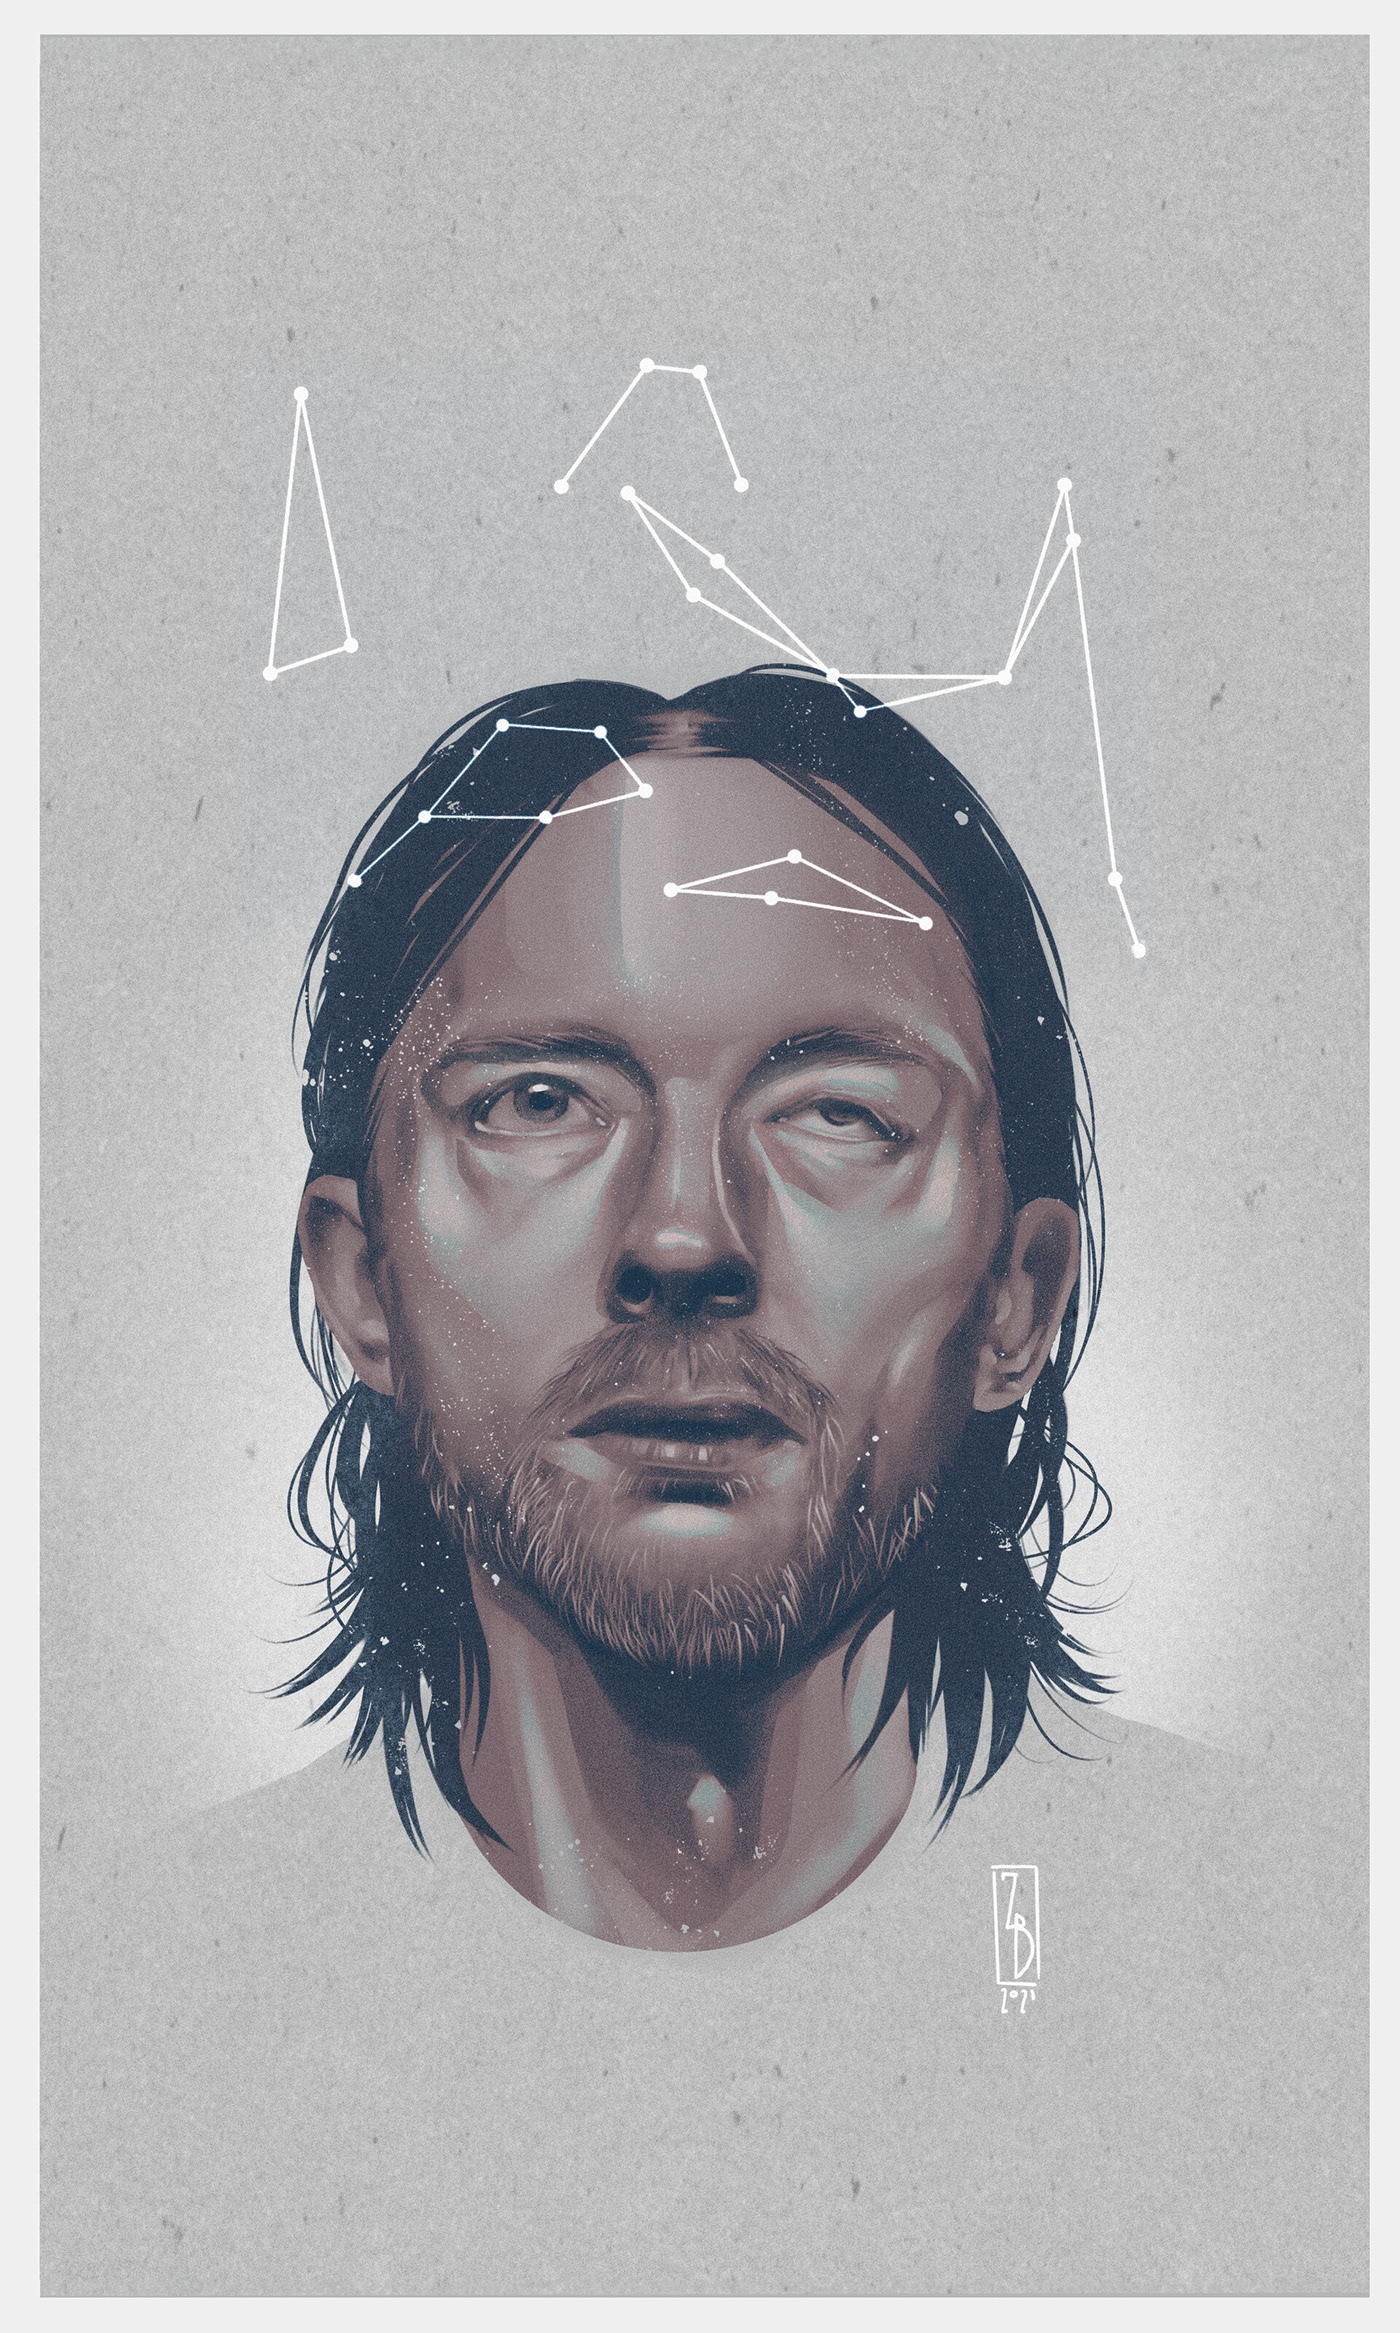 Radiohead amnesiac constellation pyramid song stars thom Yorke